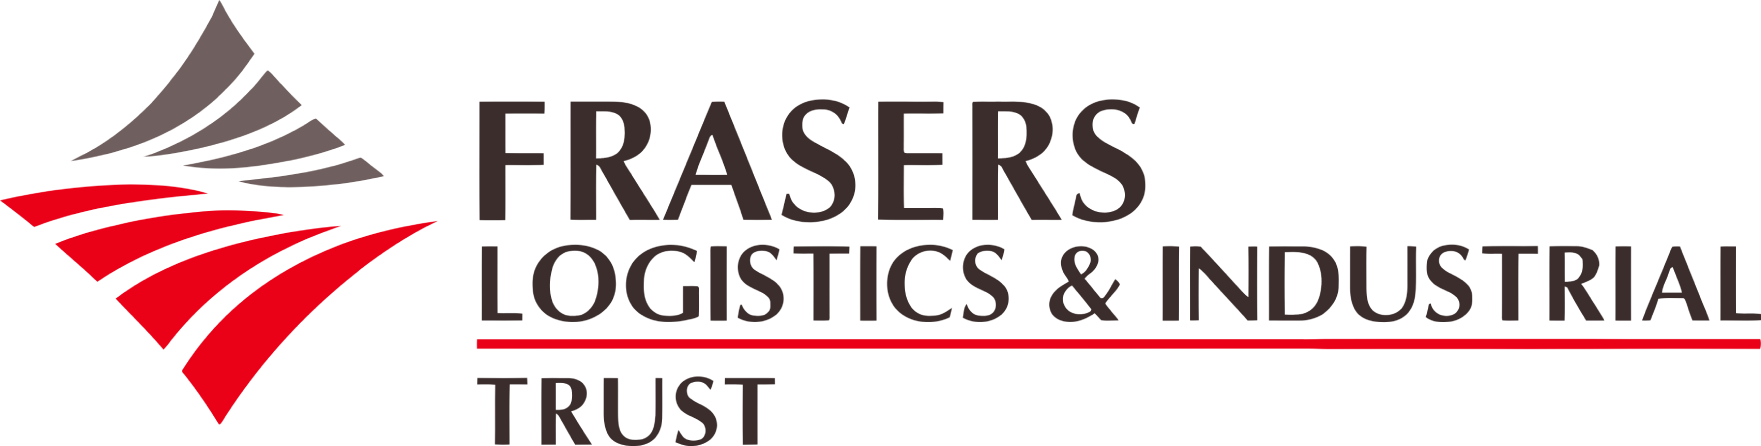 Frasers Logistics & Industrial Trust logo large (transparent PNG)